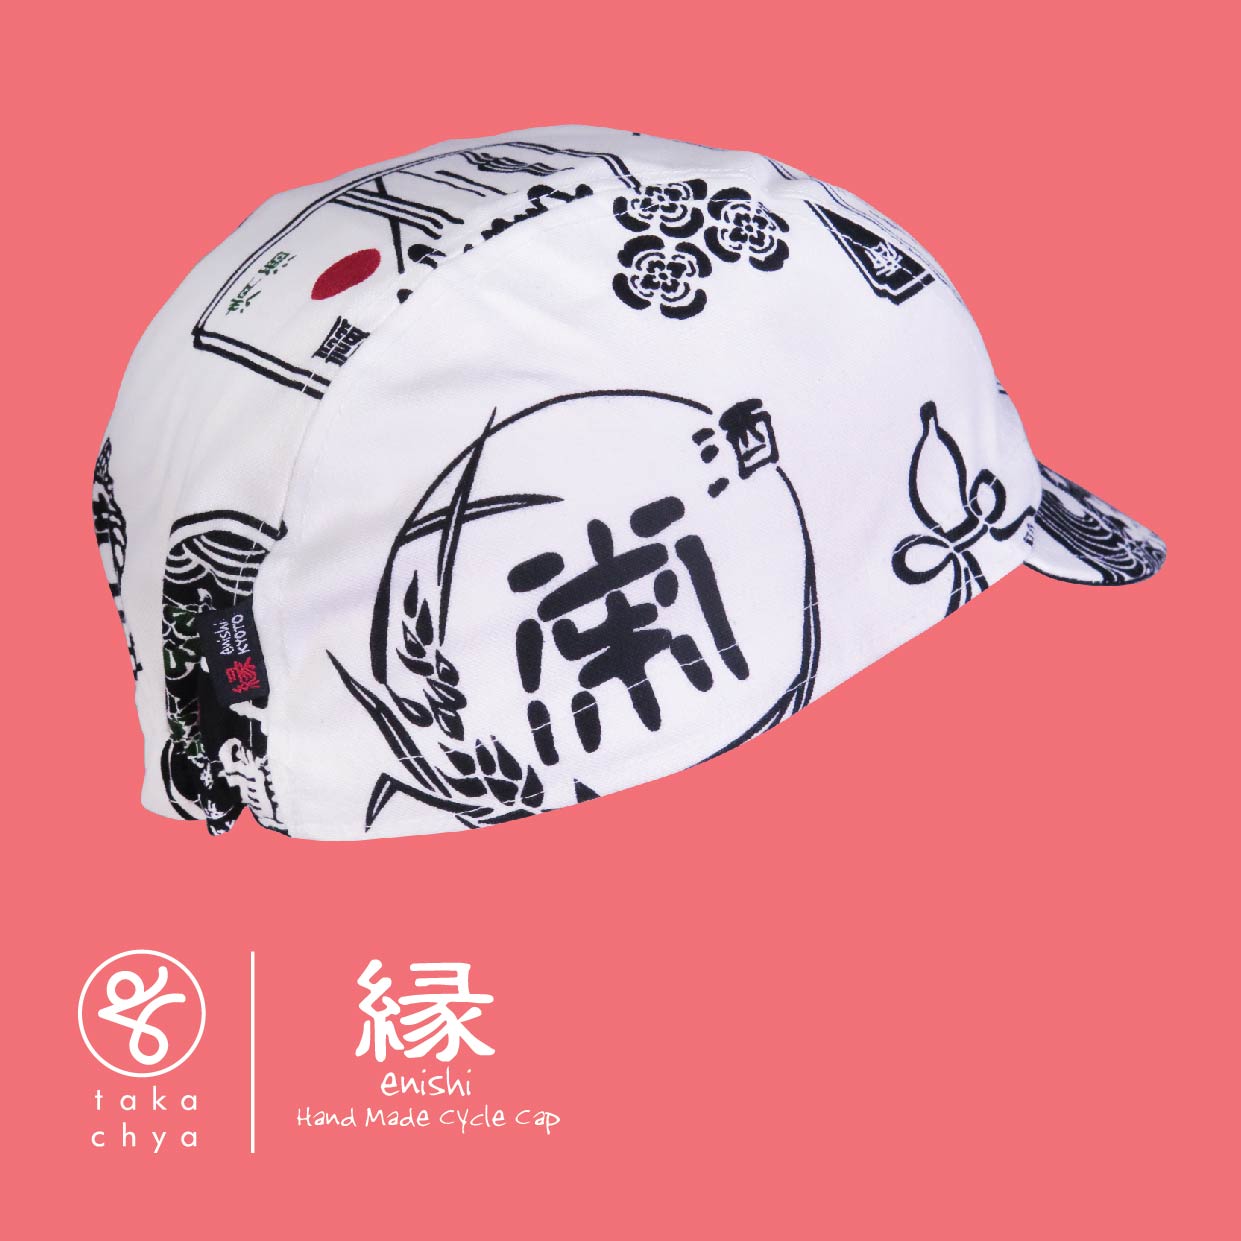 ENISHI 日本酒物語・白 / NIHONSYU MONOGATARI・WHITE HANDMADE CYCLING CAP